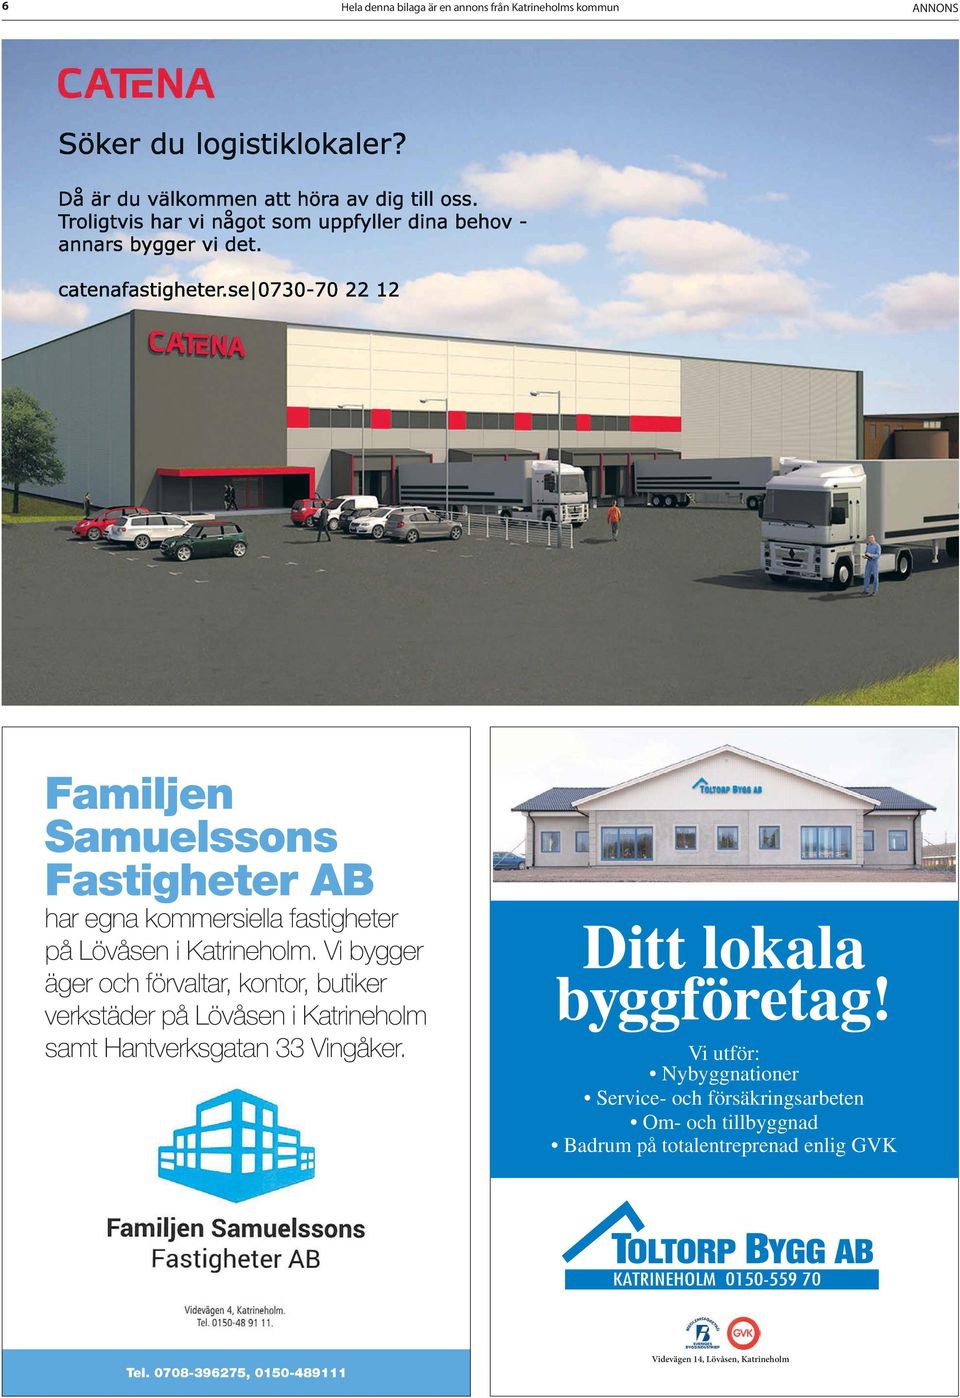 Vi bygger äger och förvaltar, kontor, butiker verkstäder på Lövåsen i Katrineholm samt Hantverksgatan 33 Vingåker.